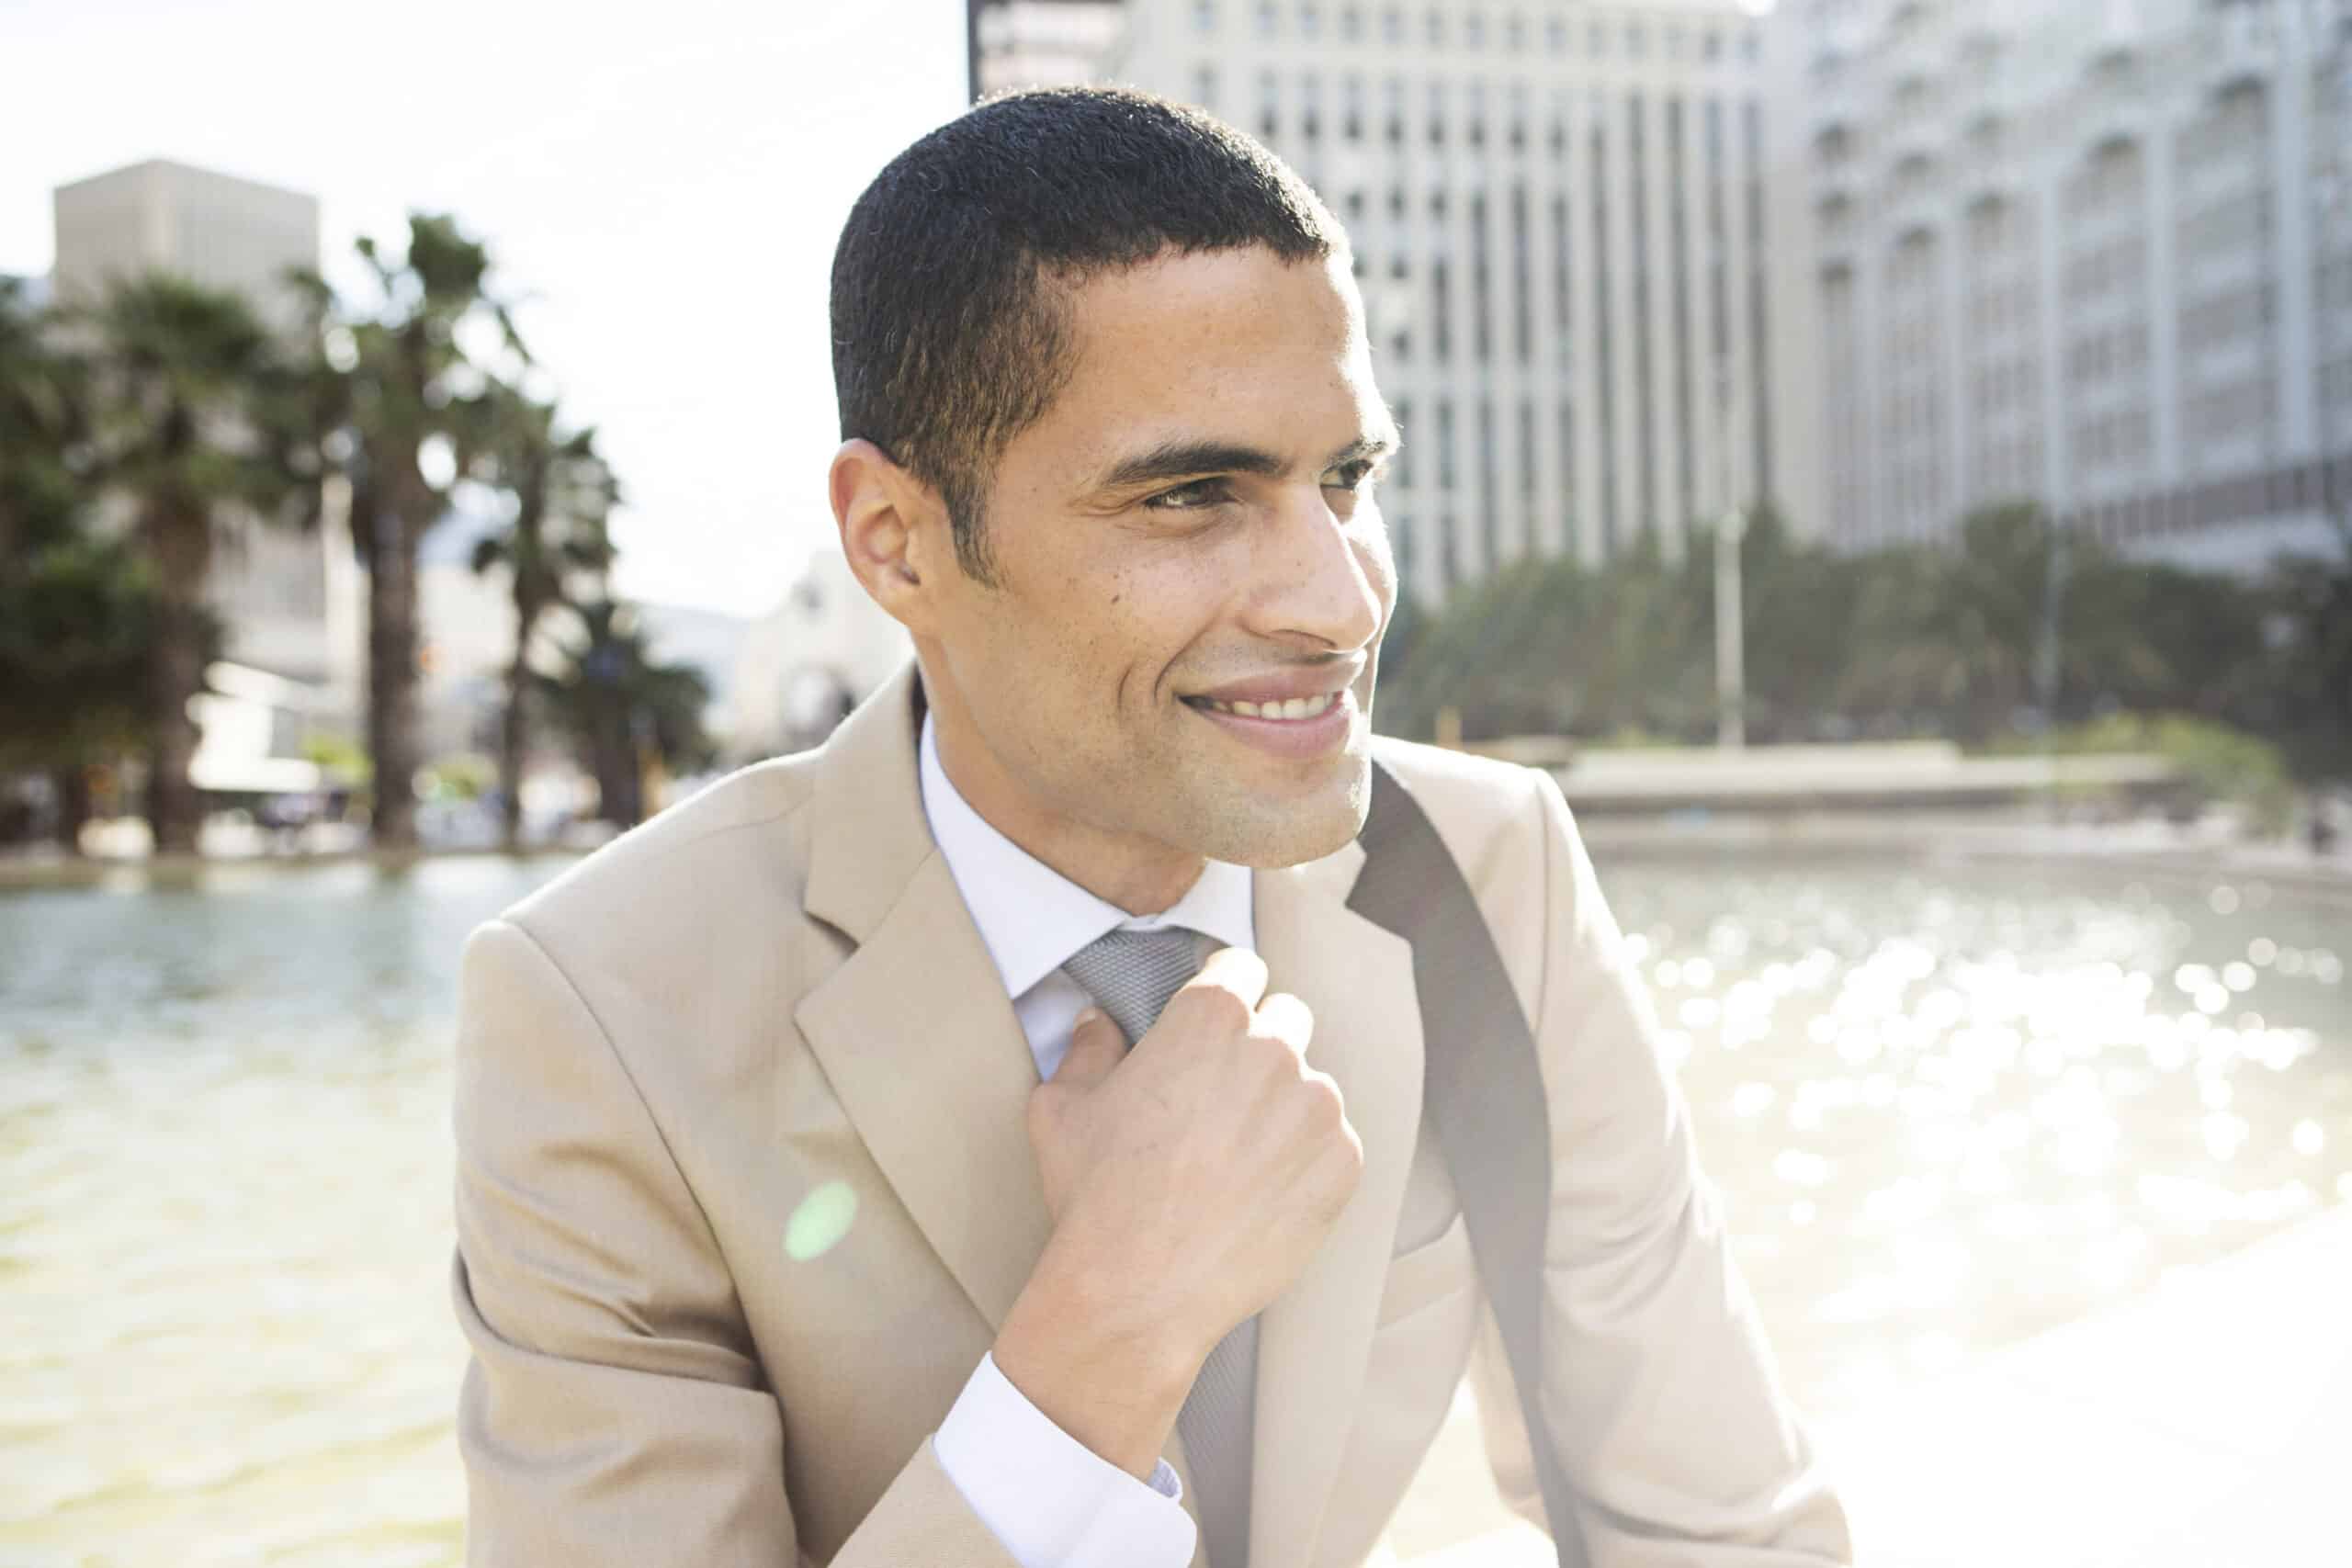 Ein lächelnder Geschäftsmann im beigen Anzug richtet seine Krawatte. Er steht im Freien mit einer Stadtlandschaft und einem Brunnen im Hintergrund und strahlt ein selbstbewusstes und entspanntes Auftreten aus. © Fotografie Tomas Rodriguez